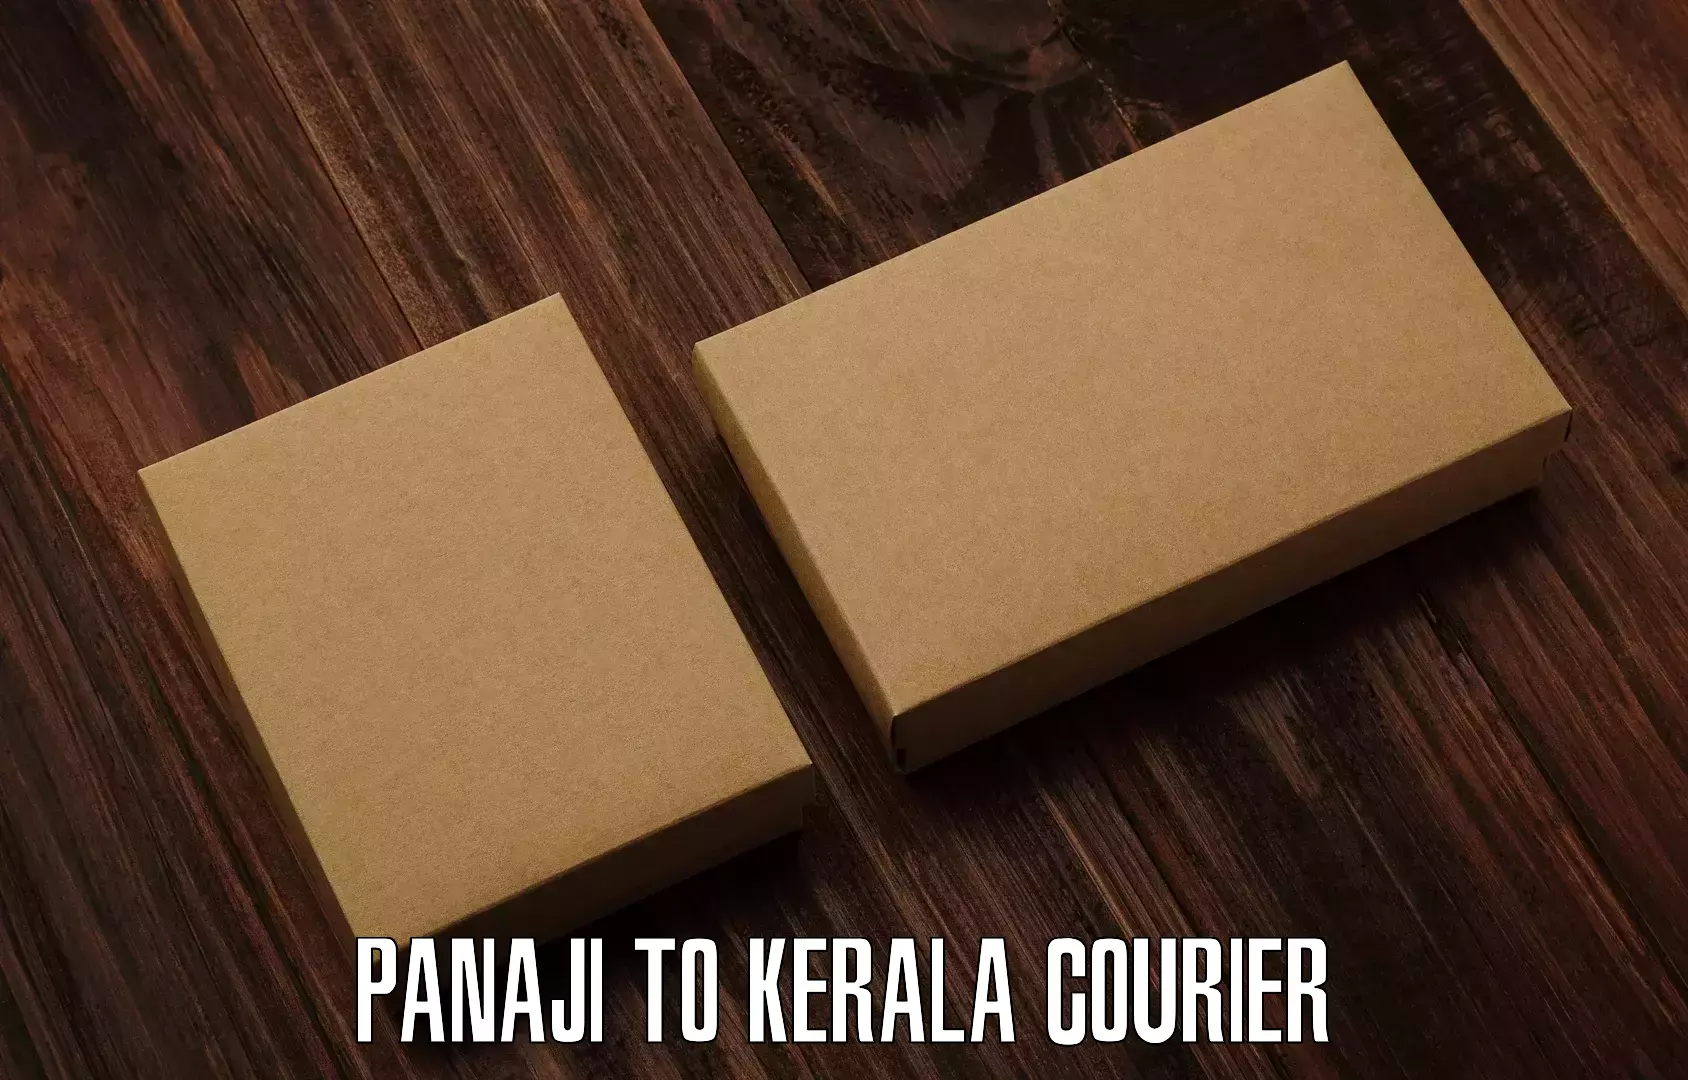 Reliable parcel services Panaji to Nochad